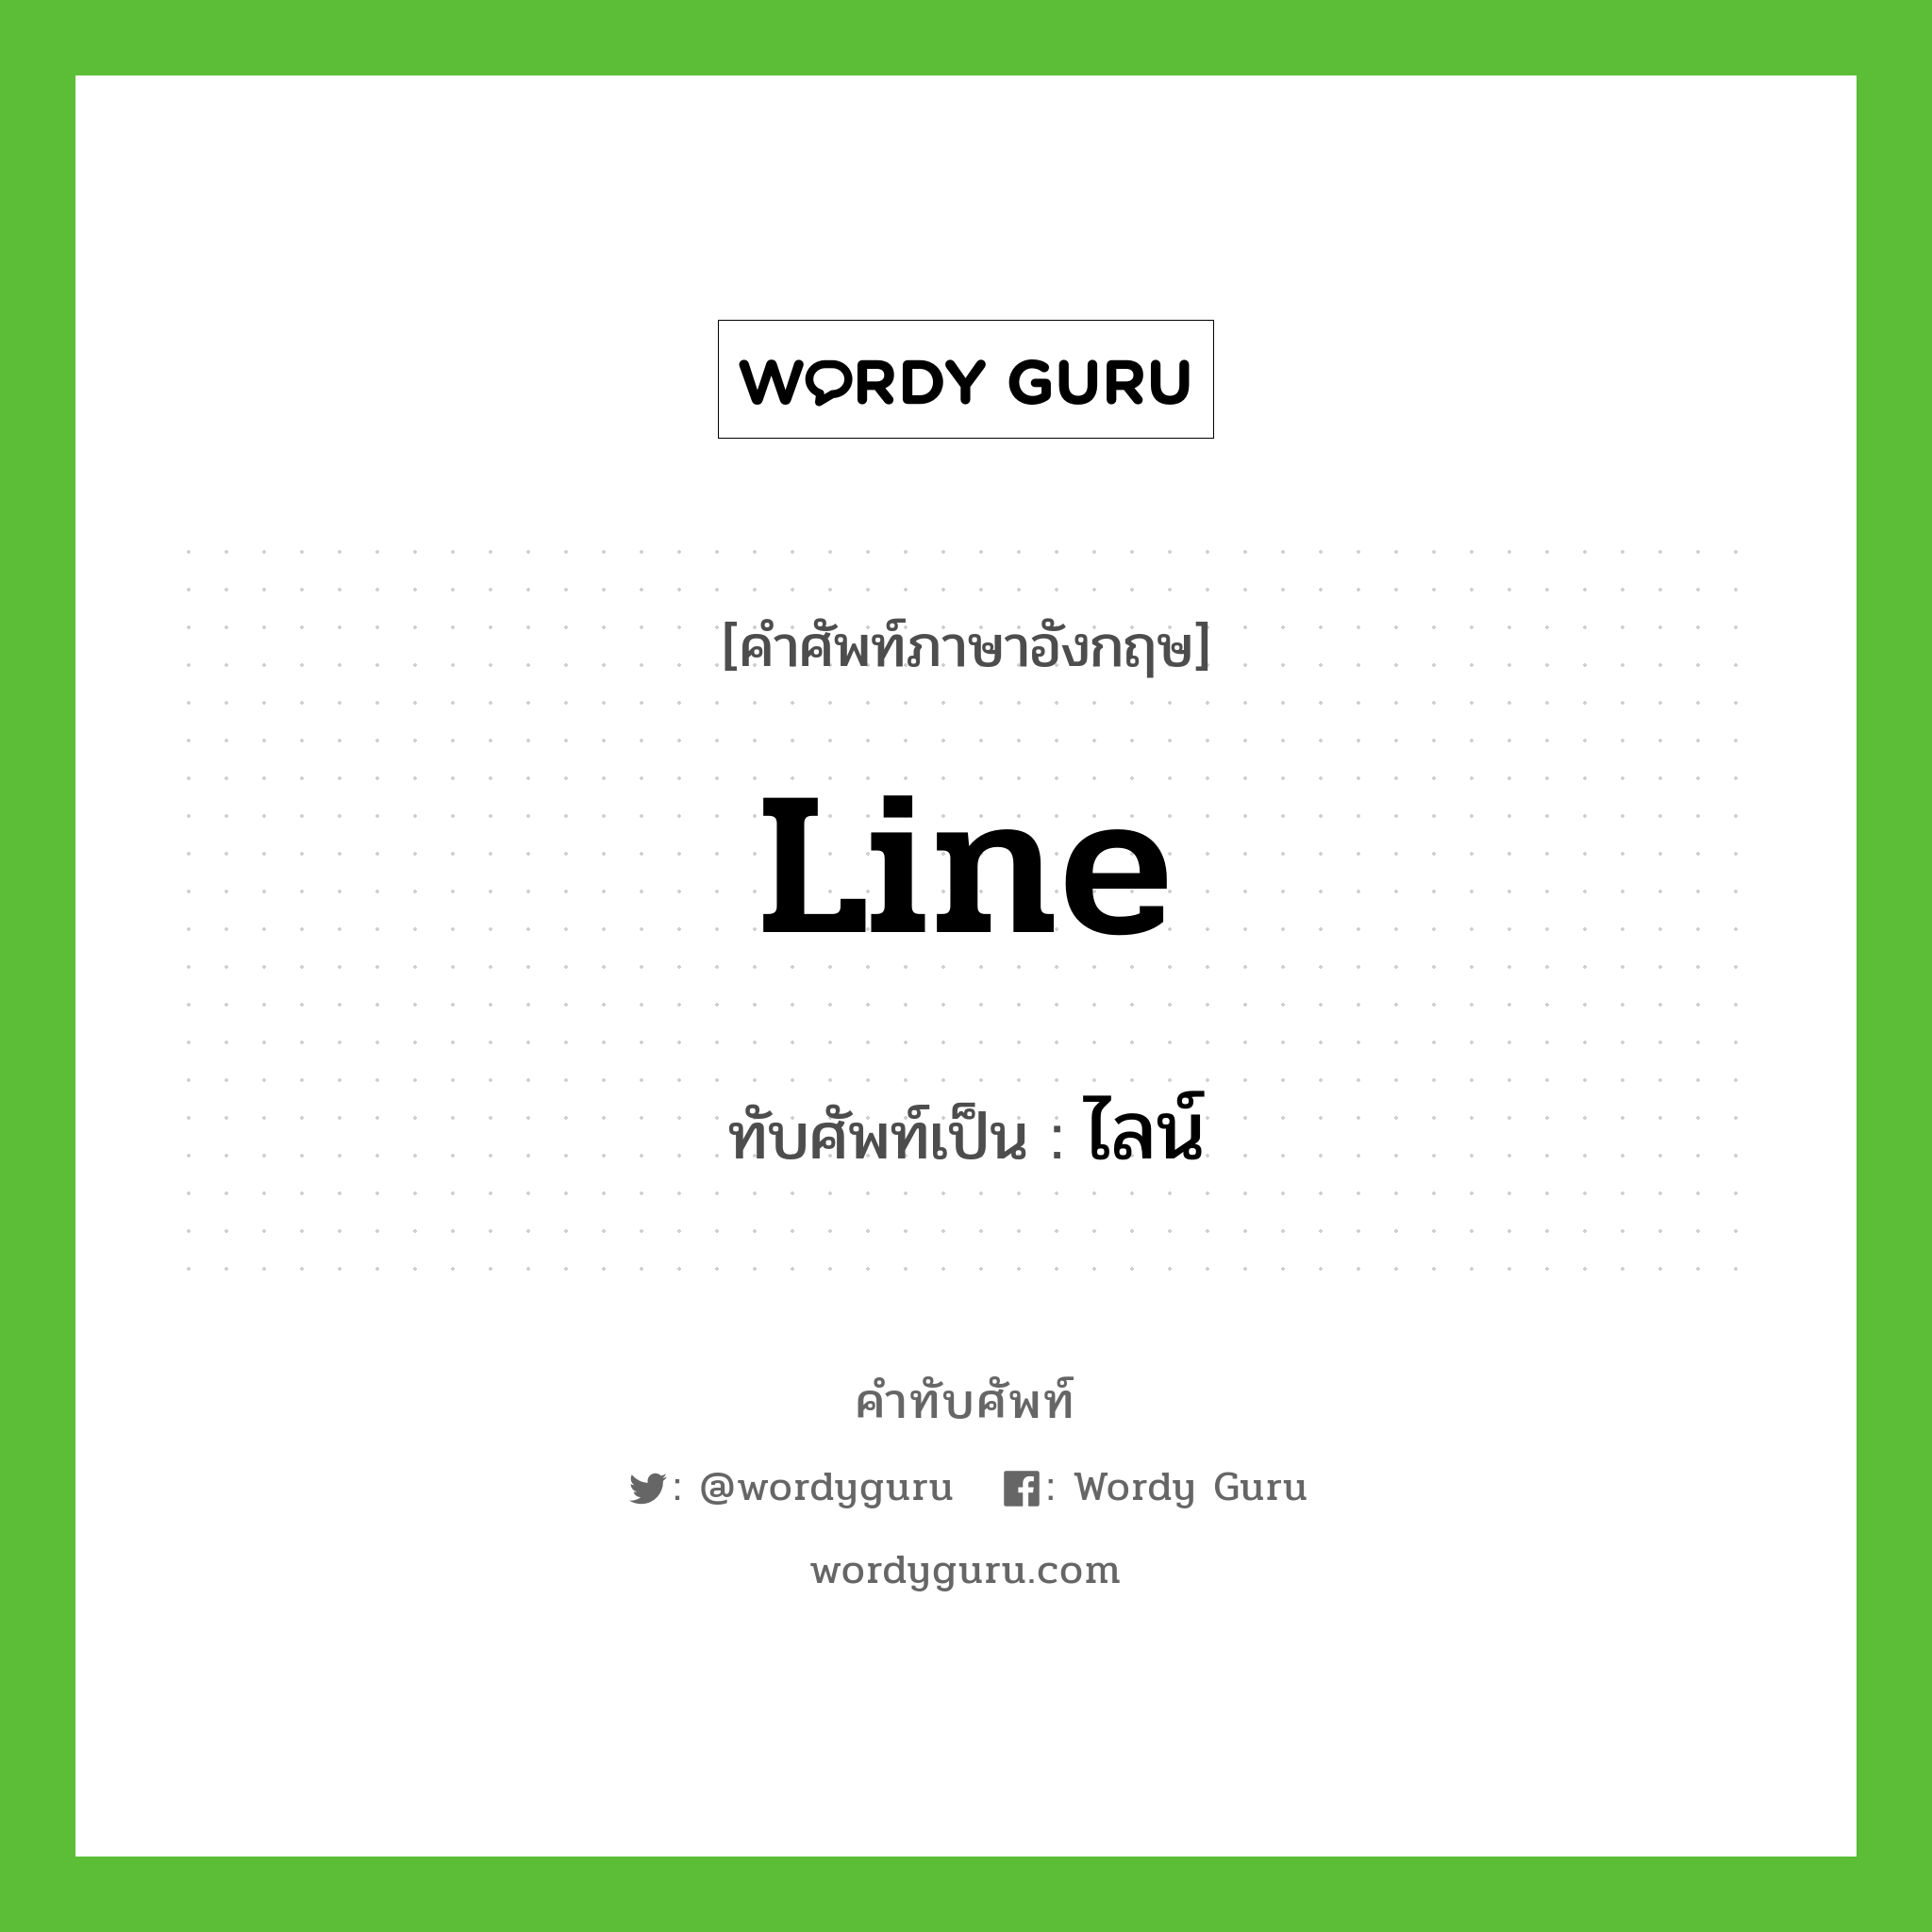 line เขียนเป็นคำไทยว่าอะไร?, คำศัพท์ภาษาอังกฤษ line ทับศัพท์เป็น ไลน์